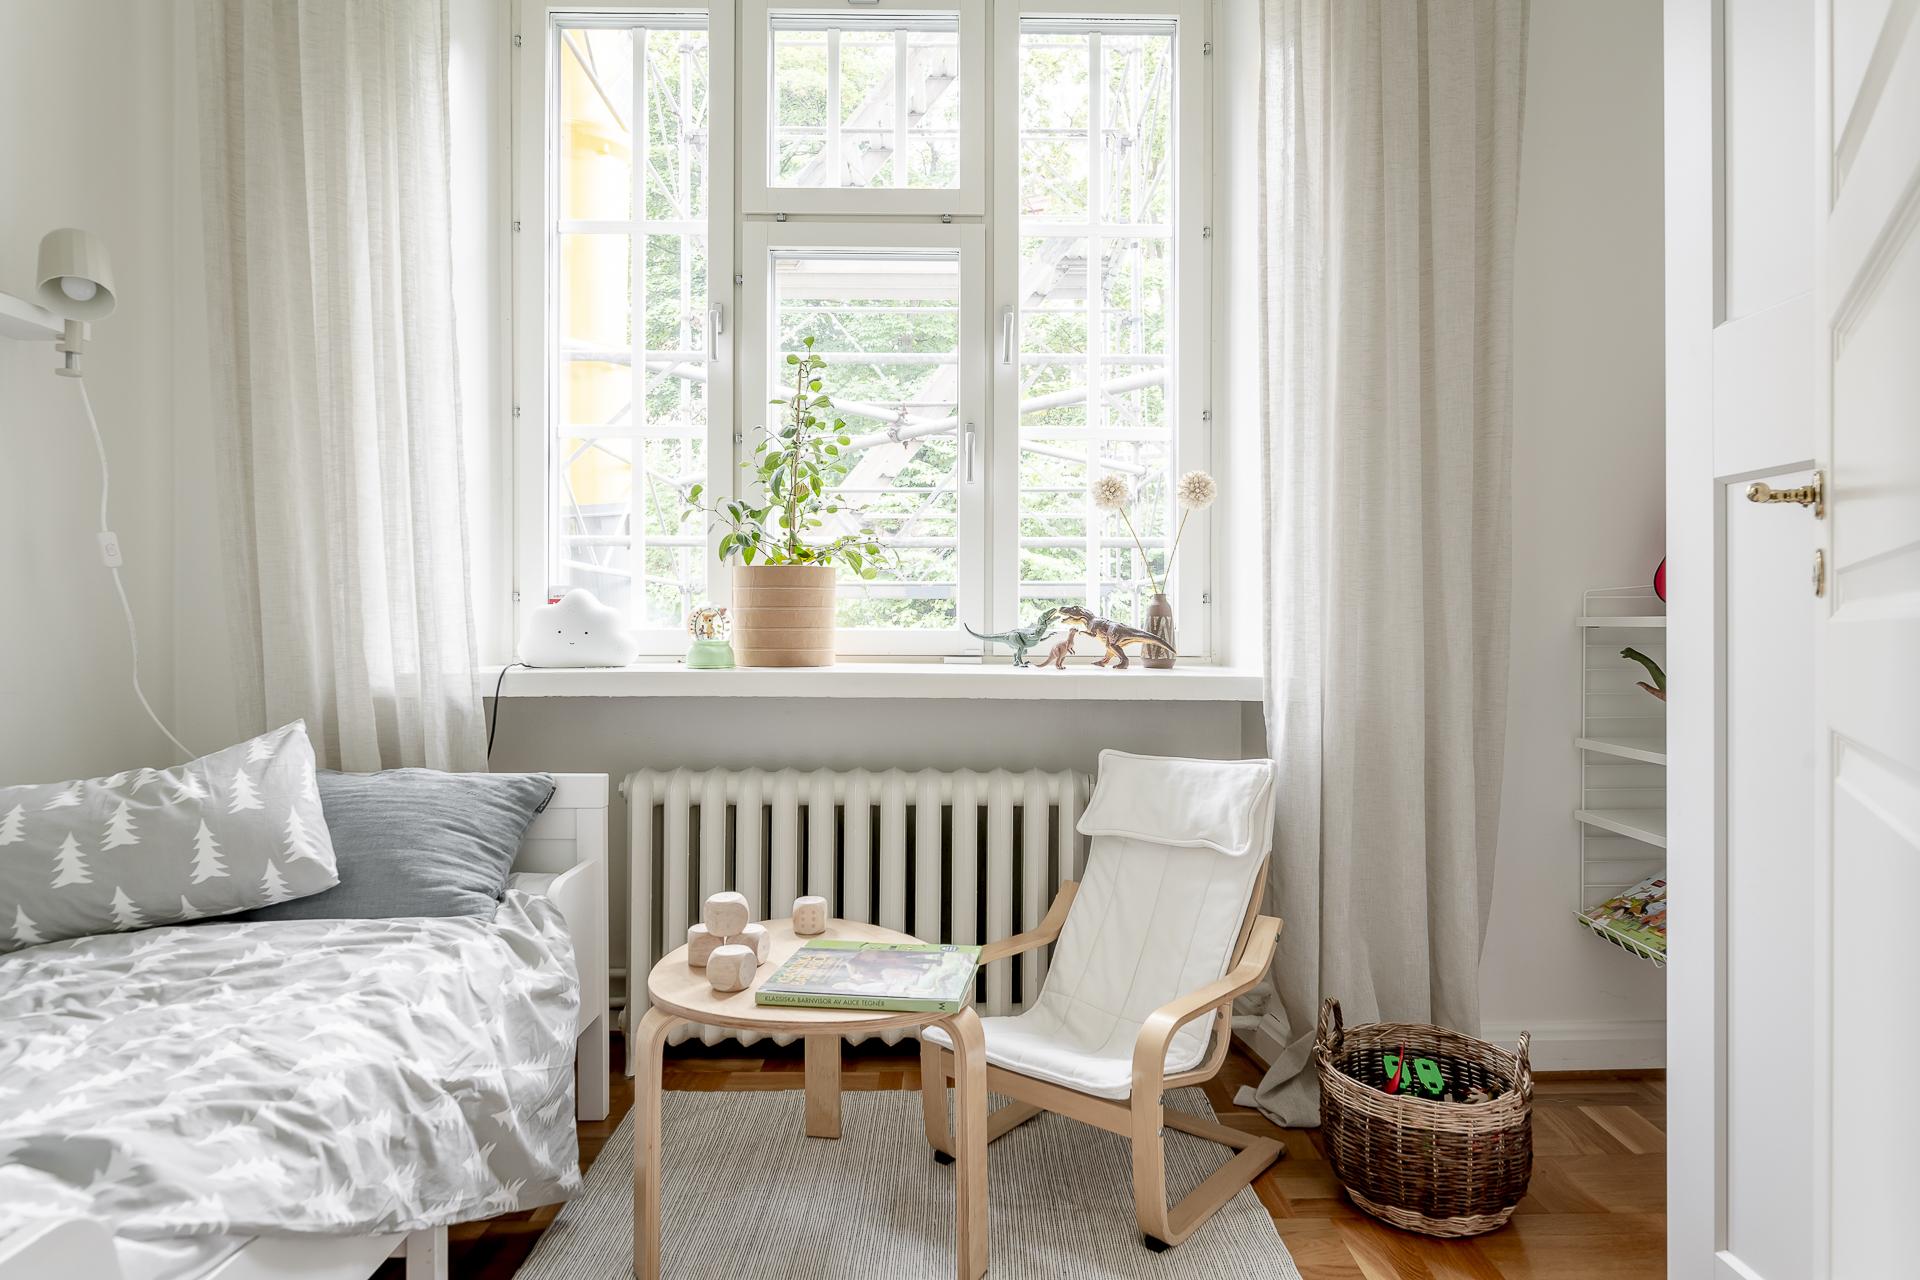 公寓设计,公寓设计案例,瑞典,60㎡,Alvhem,小公寓设计案例,公寓装修,北欧风格,最小宅,白色+米色